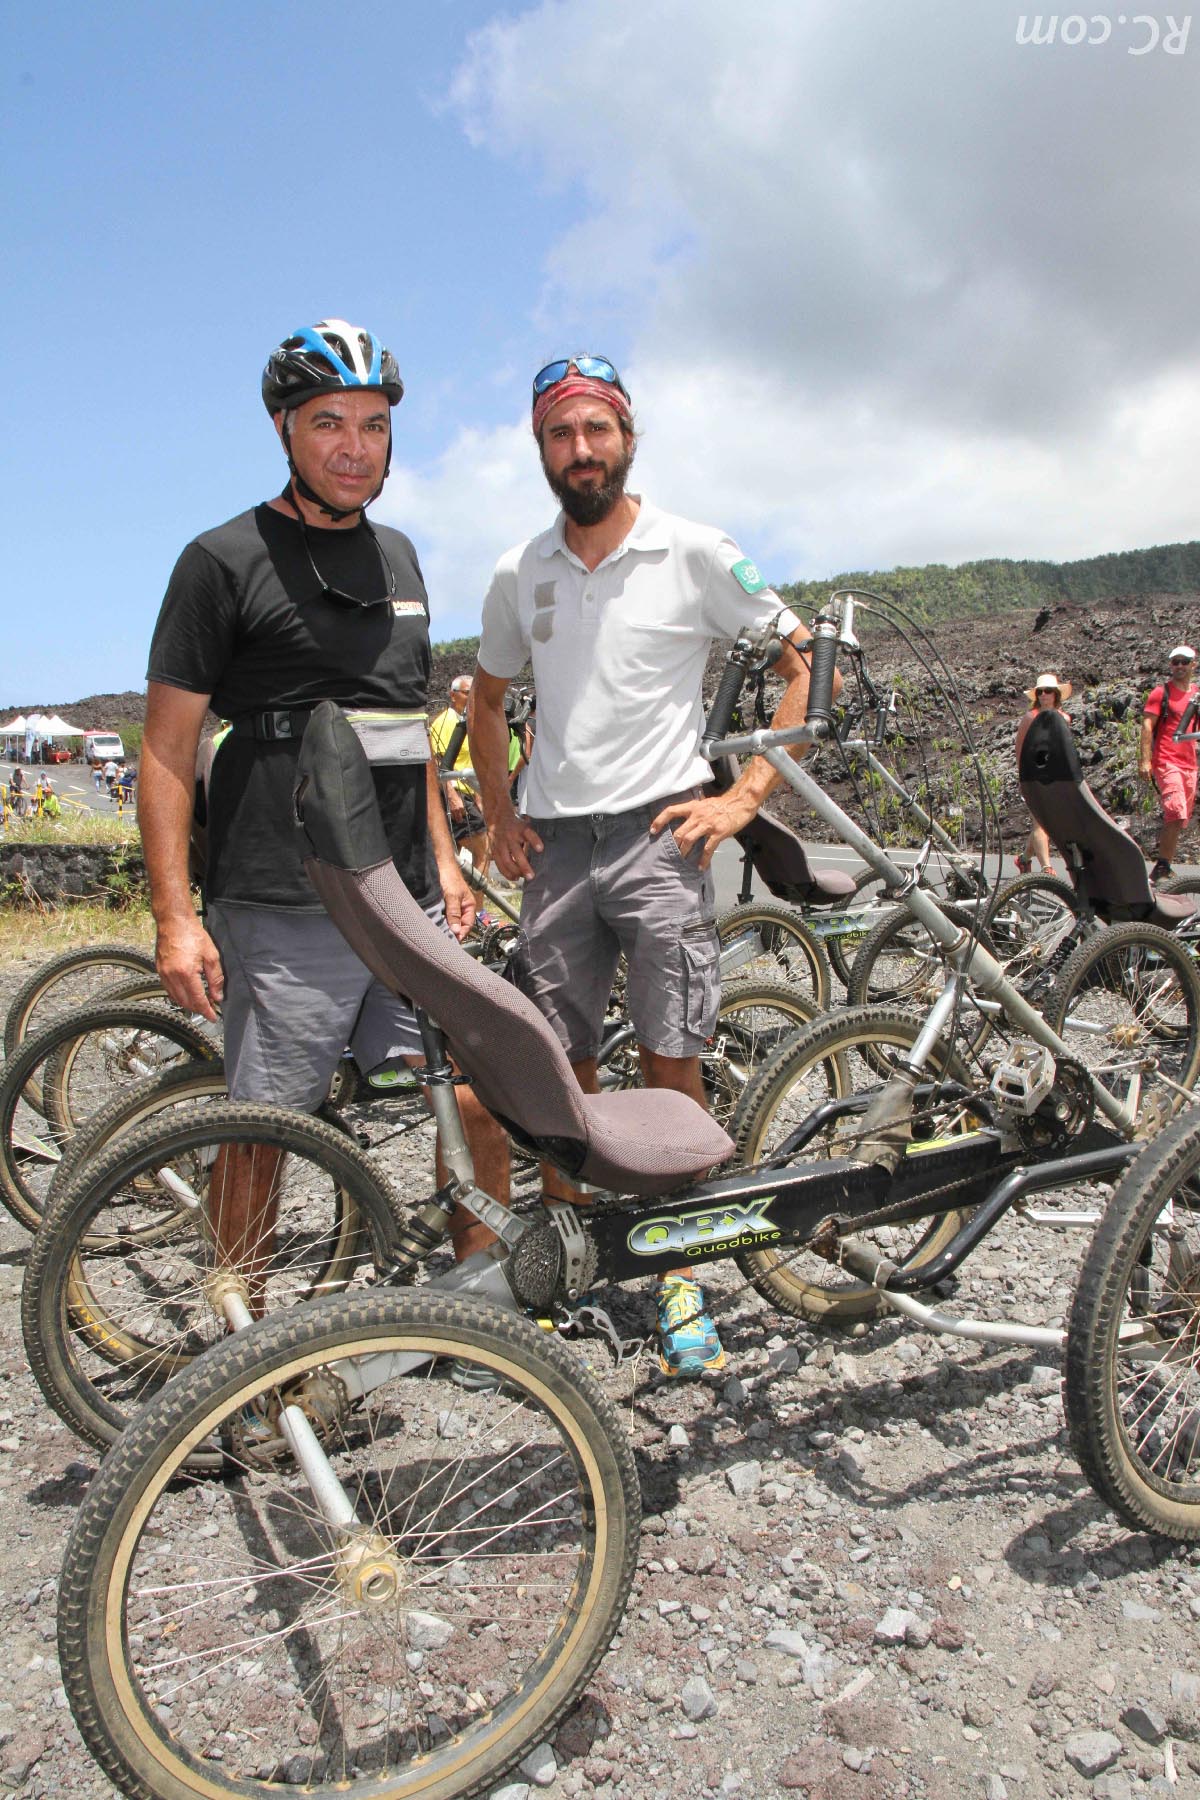 Bertrand etFrédéric, amateurs de quad-bike